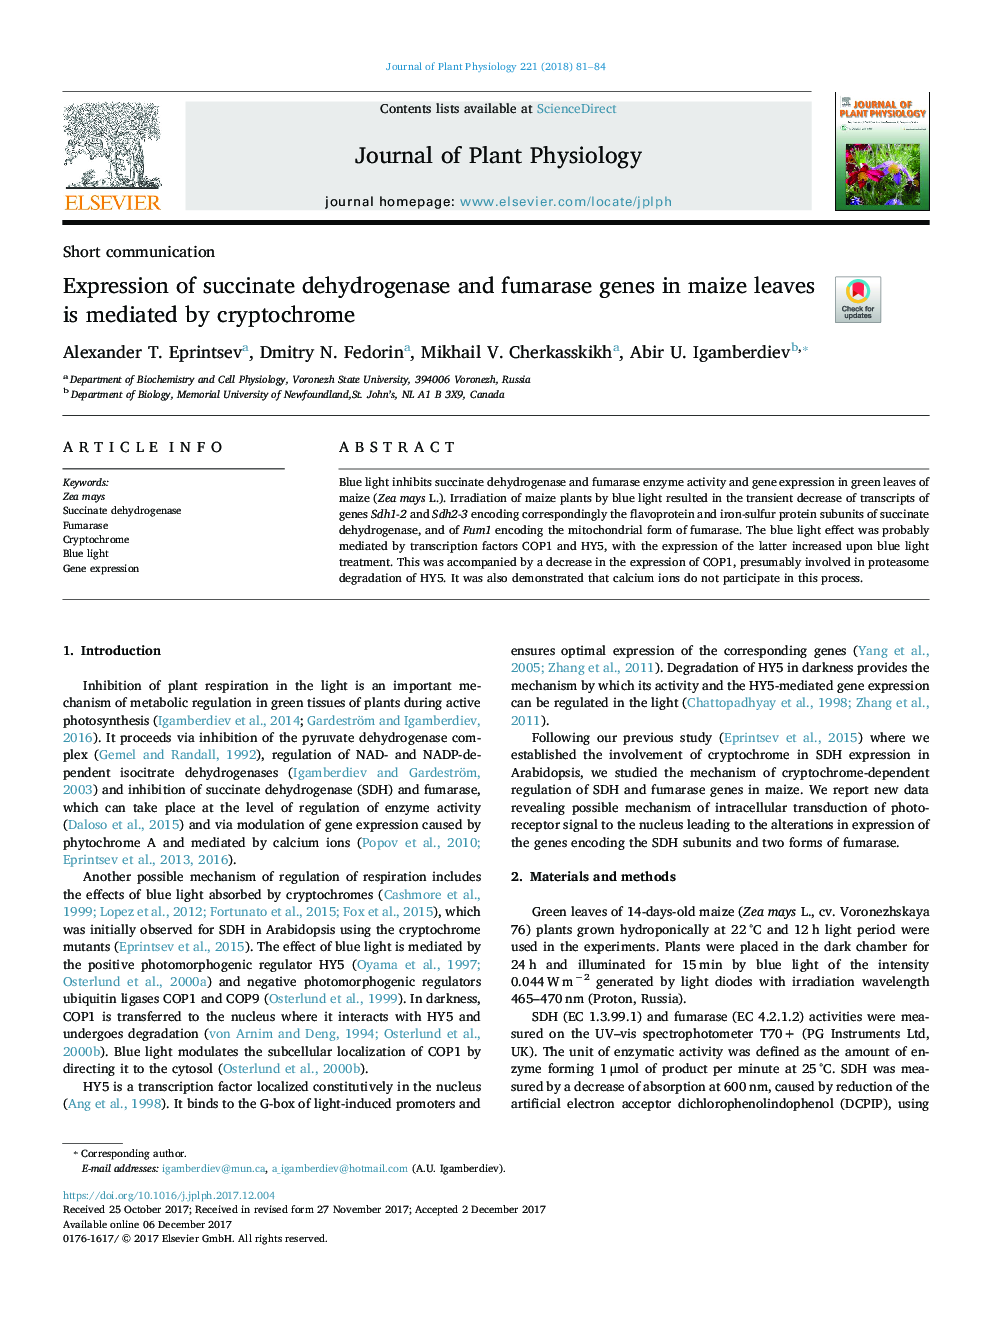 بیان ژنهای سوکسیناد دهیدروژناز و فوماراز در برگ های ذرت با استفاده از کریپتوچروم 